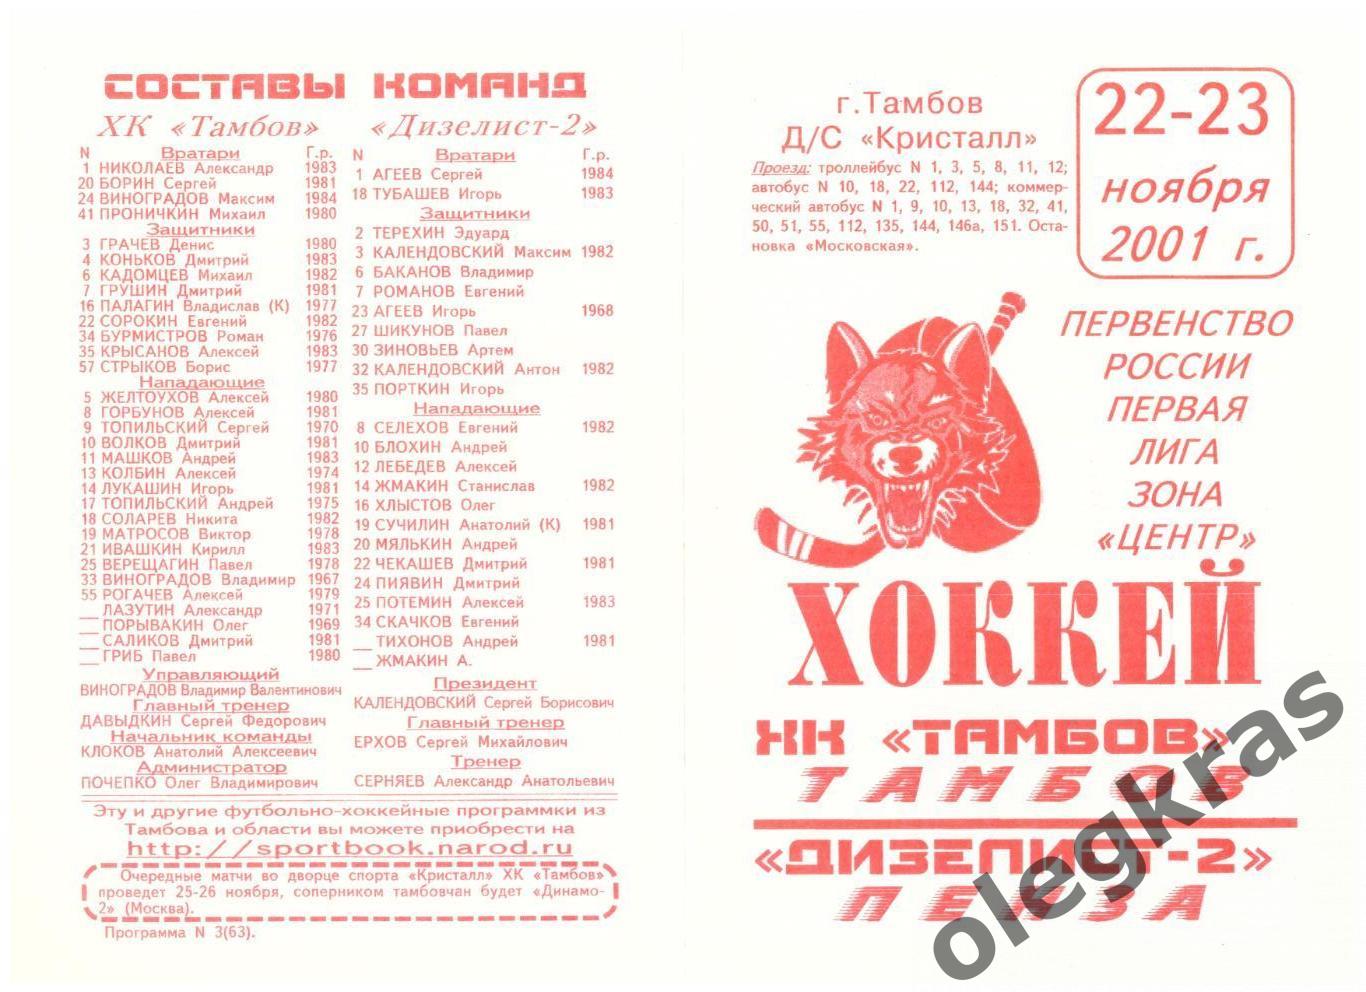 ХК Тамбов(Тамбов) - Дизелист - 2(Пенза) - 22-23 ноября 2001 года.